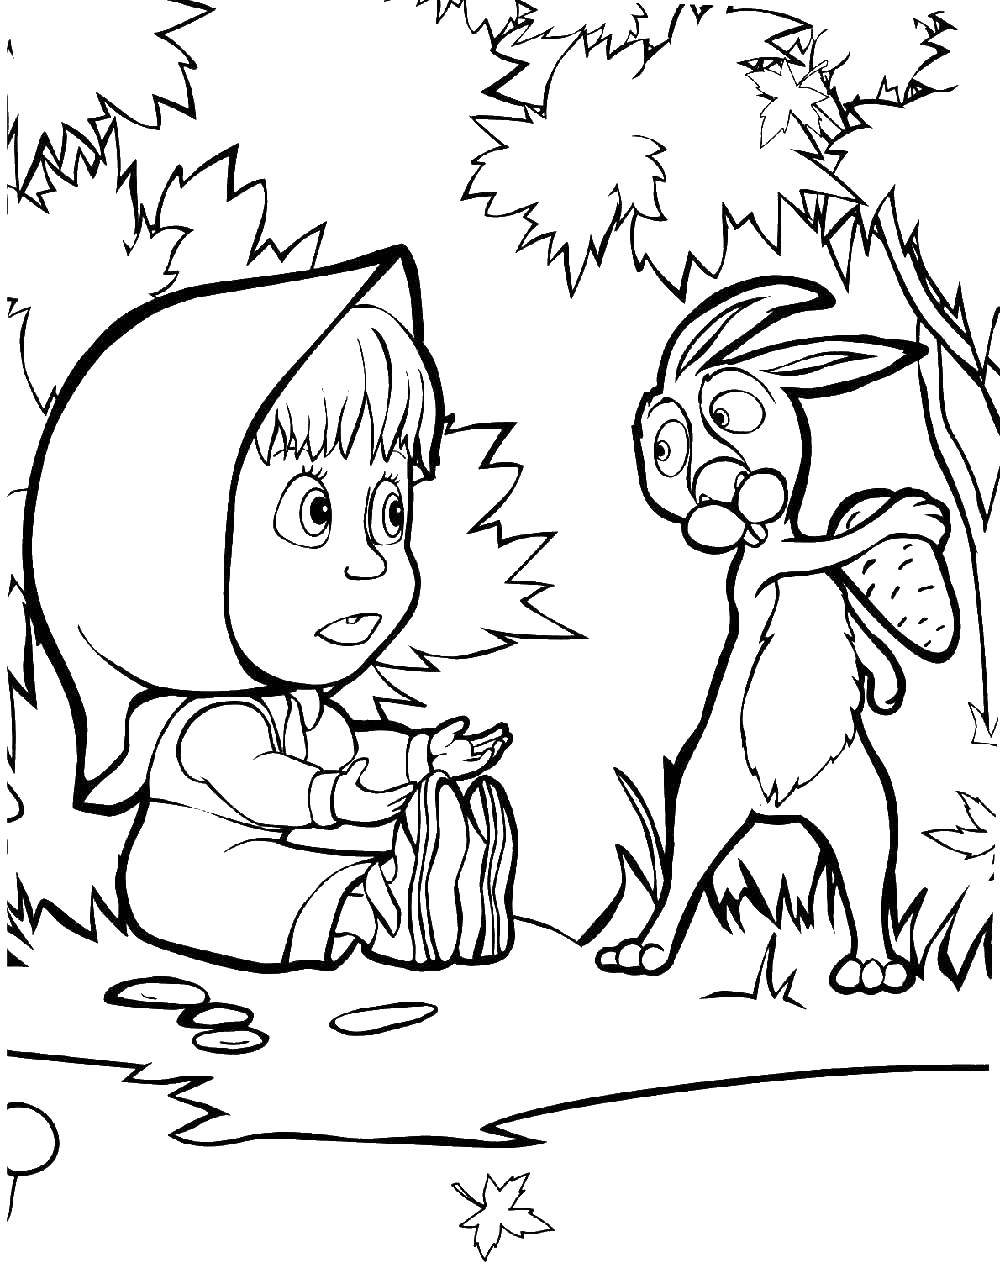 Раскраски для детей про озорную Машу из мультфильма Маша и медведь  Заяц забрал морковку у маши